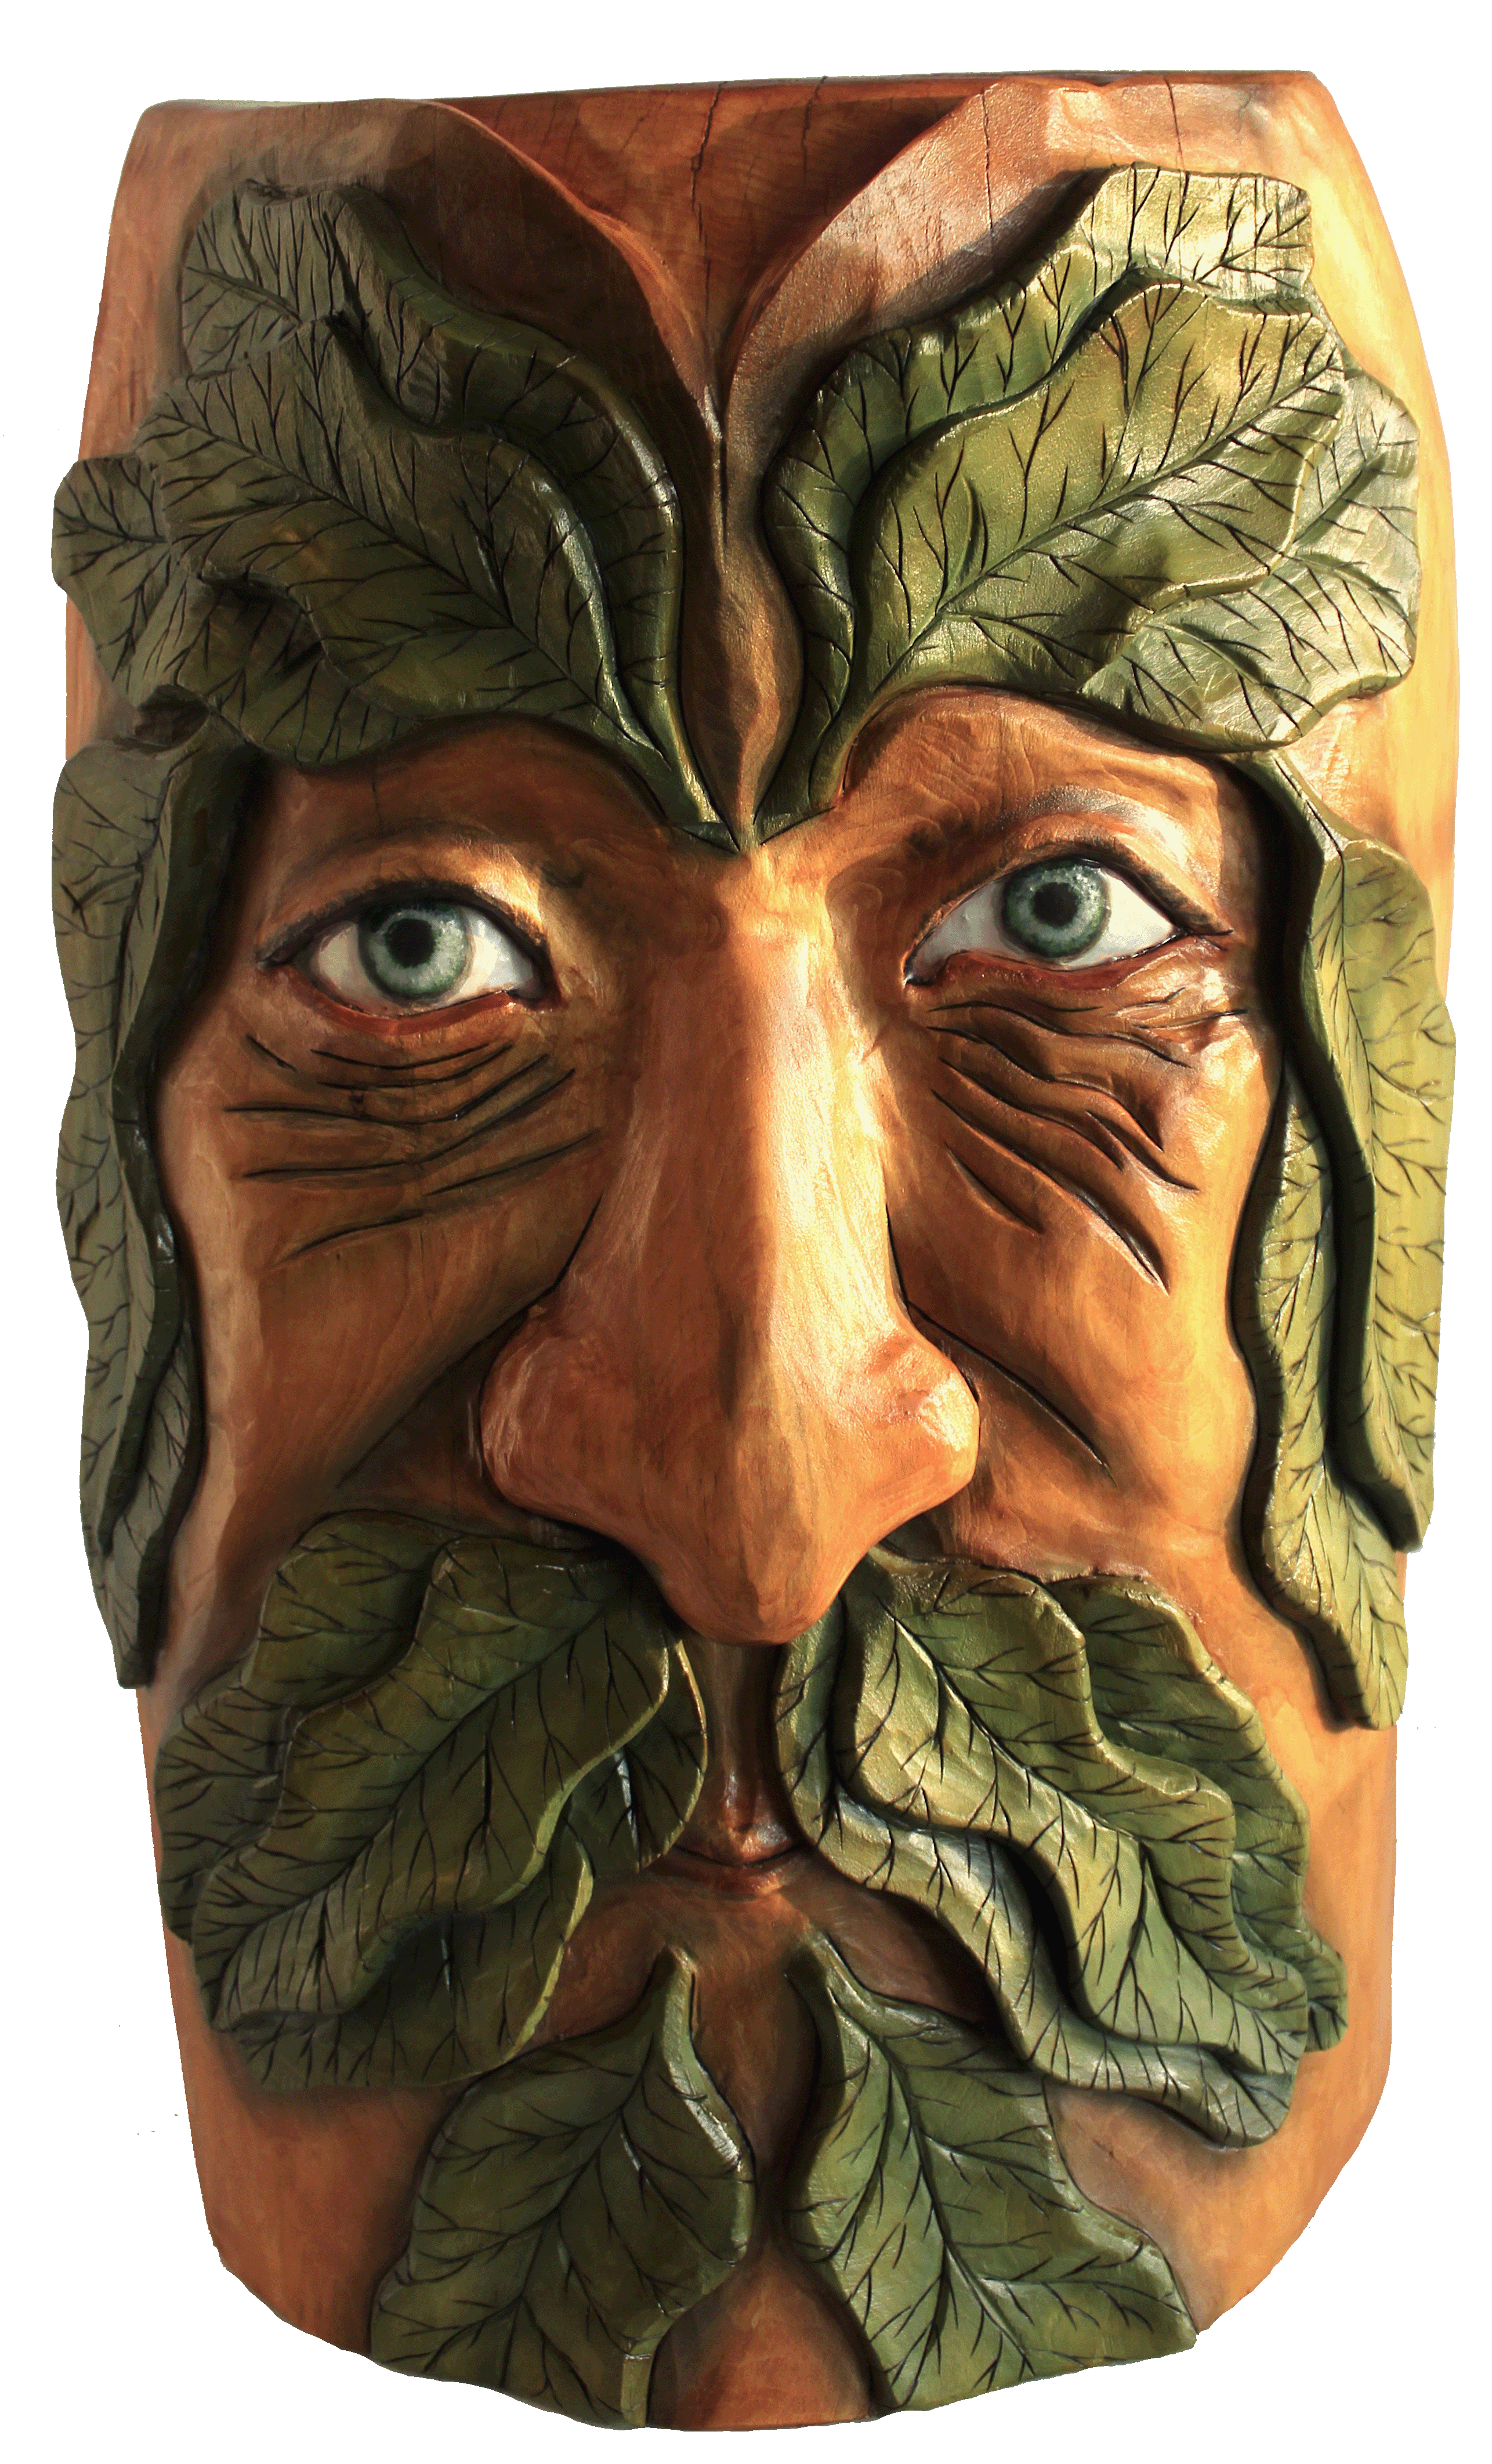 Greenman Sculpture, woodcarving art, homedecore art